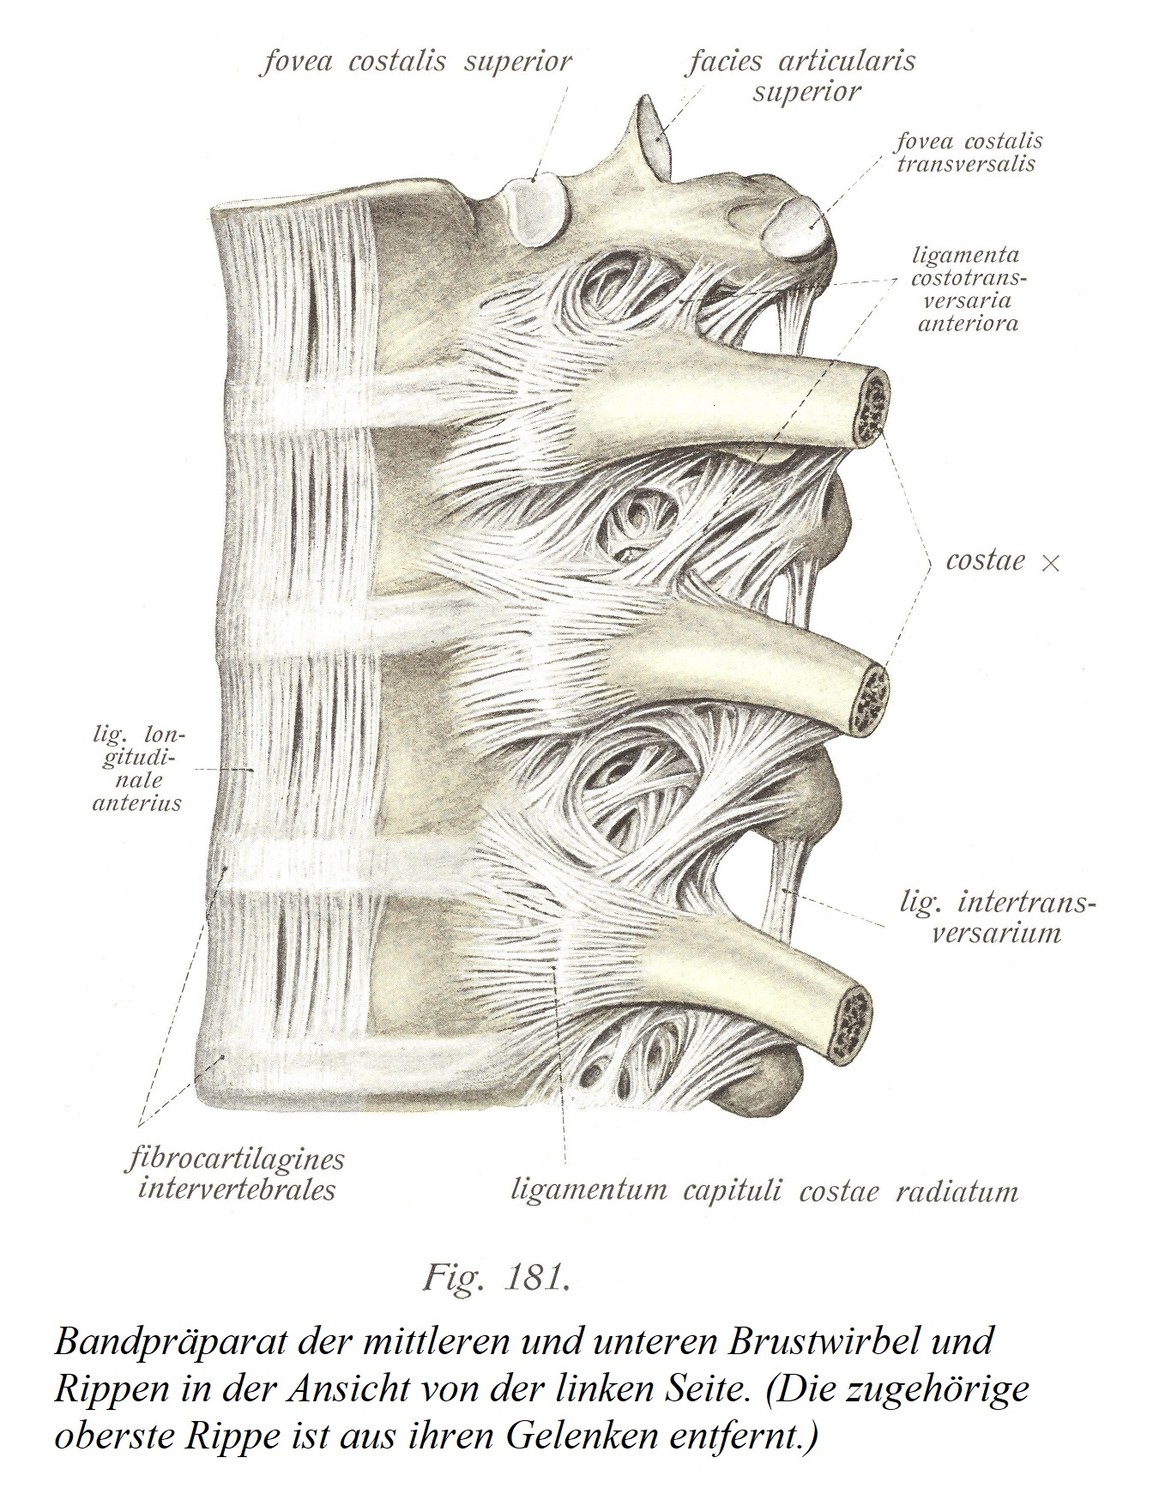  Связочный препарат средне- и нижнегрудных позвонков и ребер, вид слева. (Соответствующее верхнее ребро удаляется из суставов.)